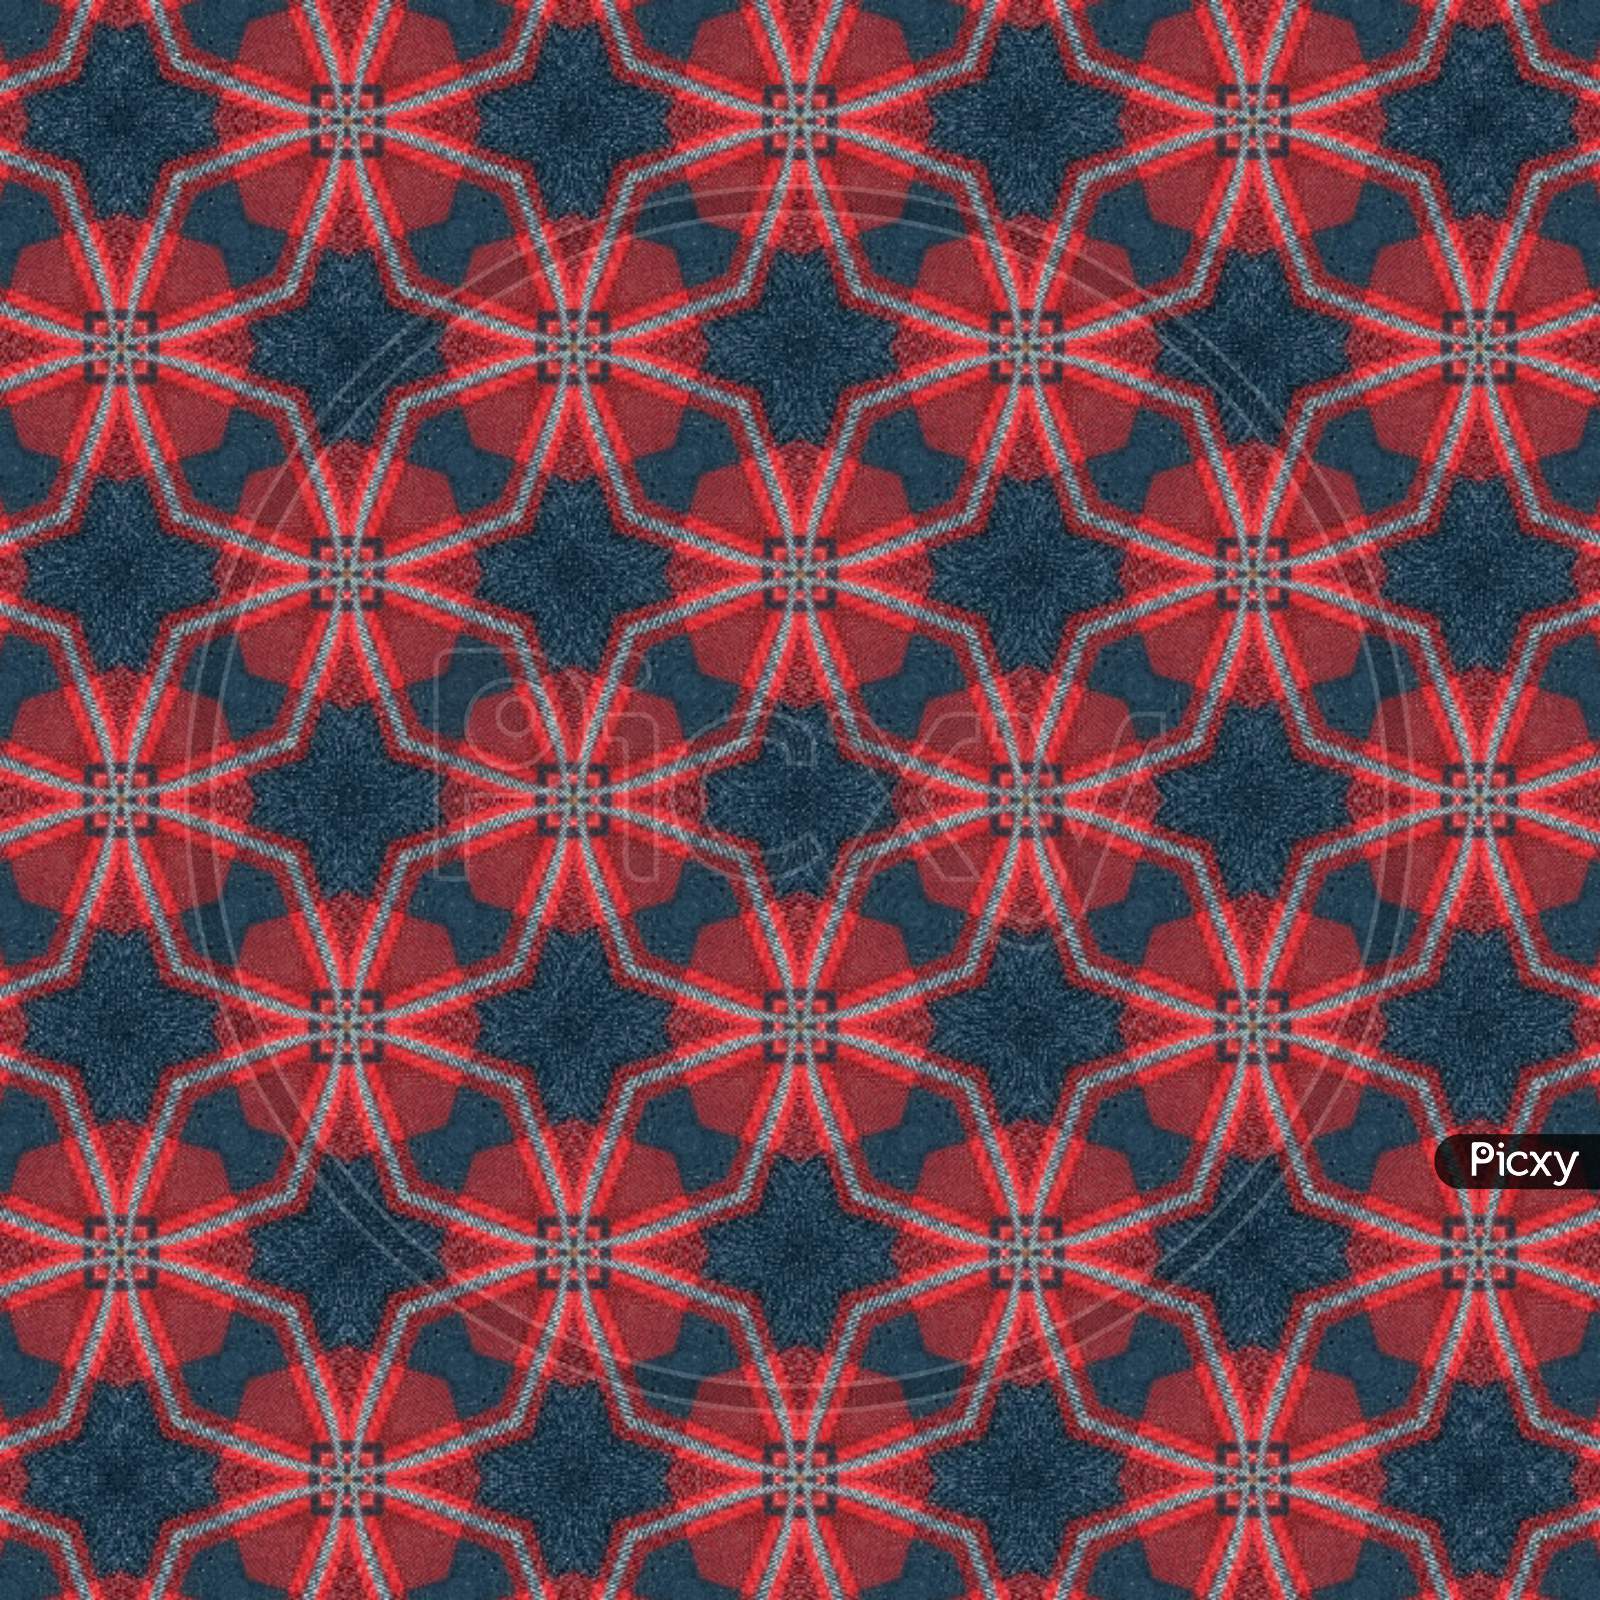 Red-blue pattern textile design illustration art